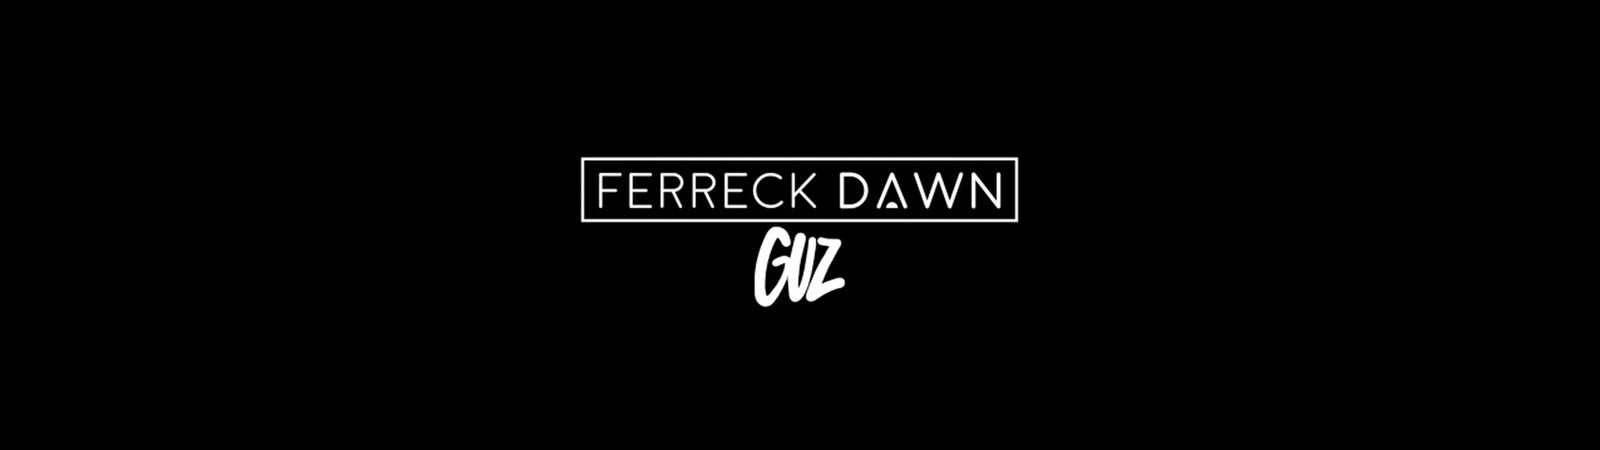 Ferreck Dawn & Guz